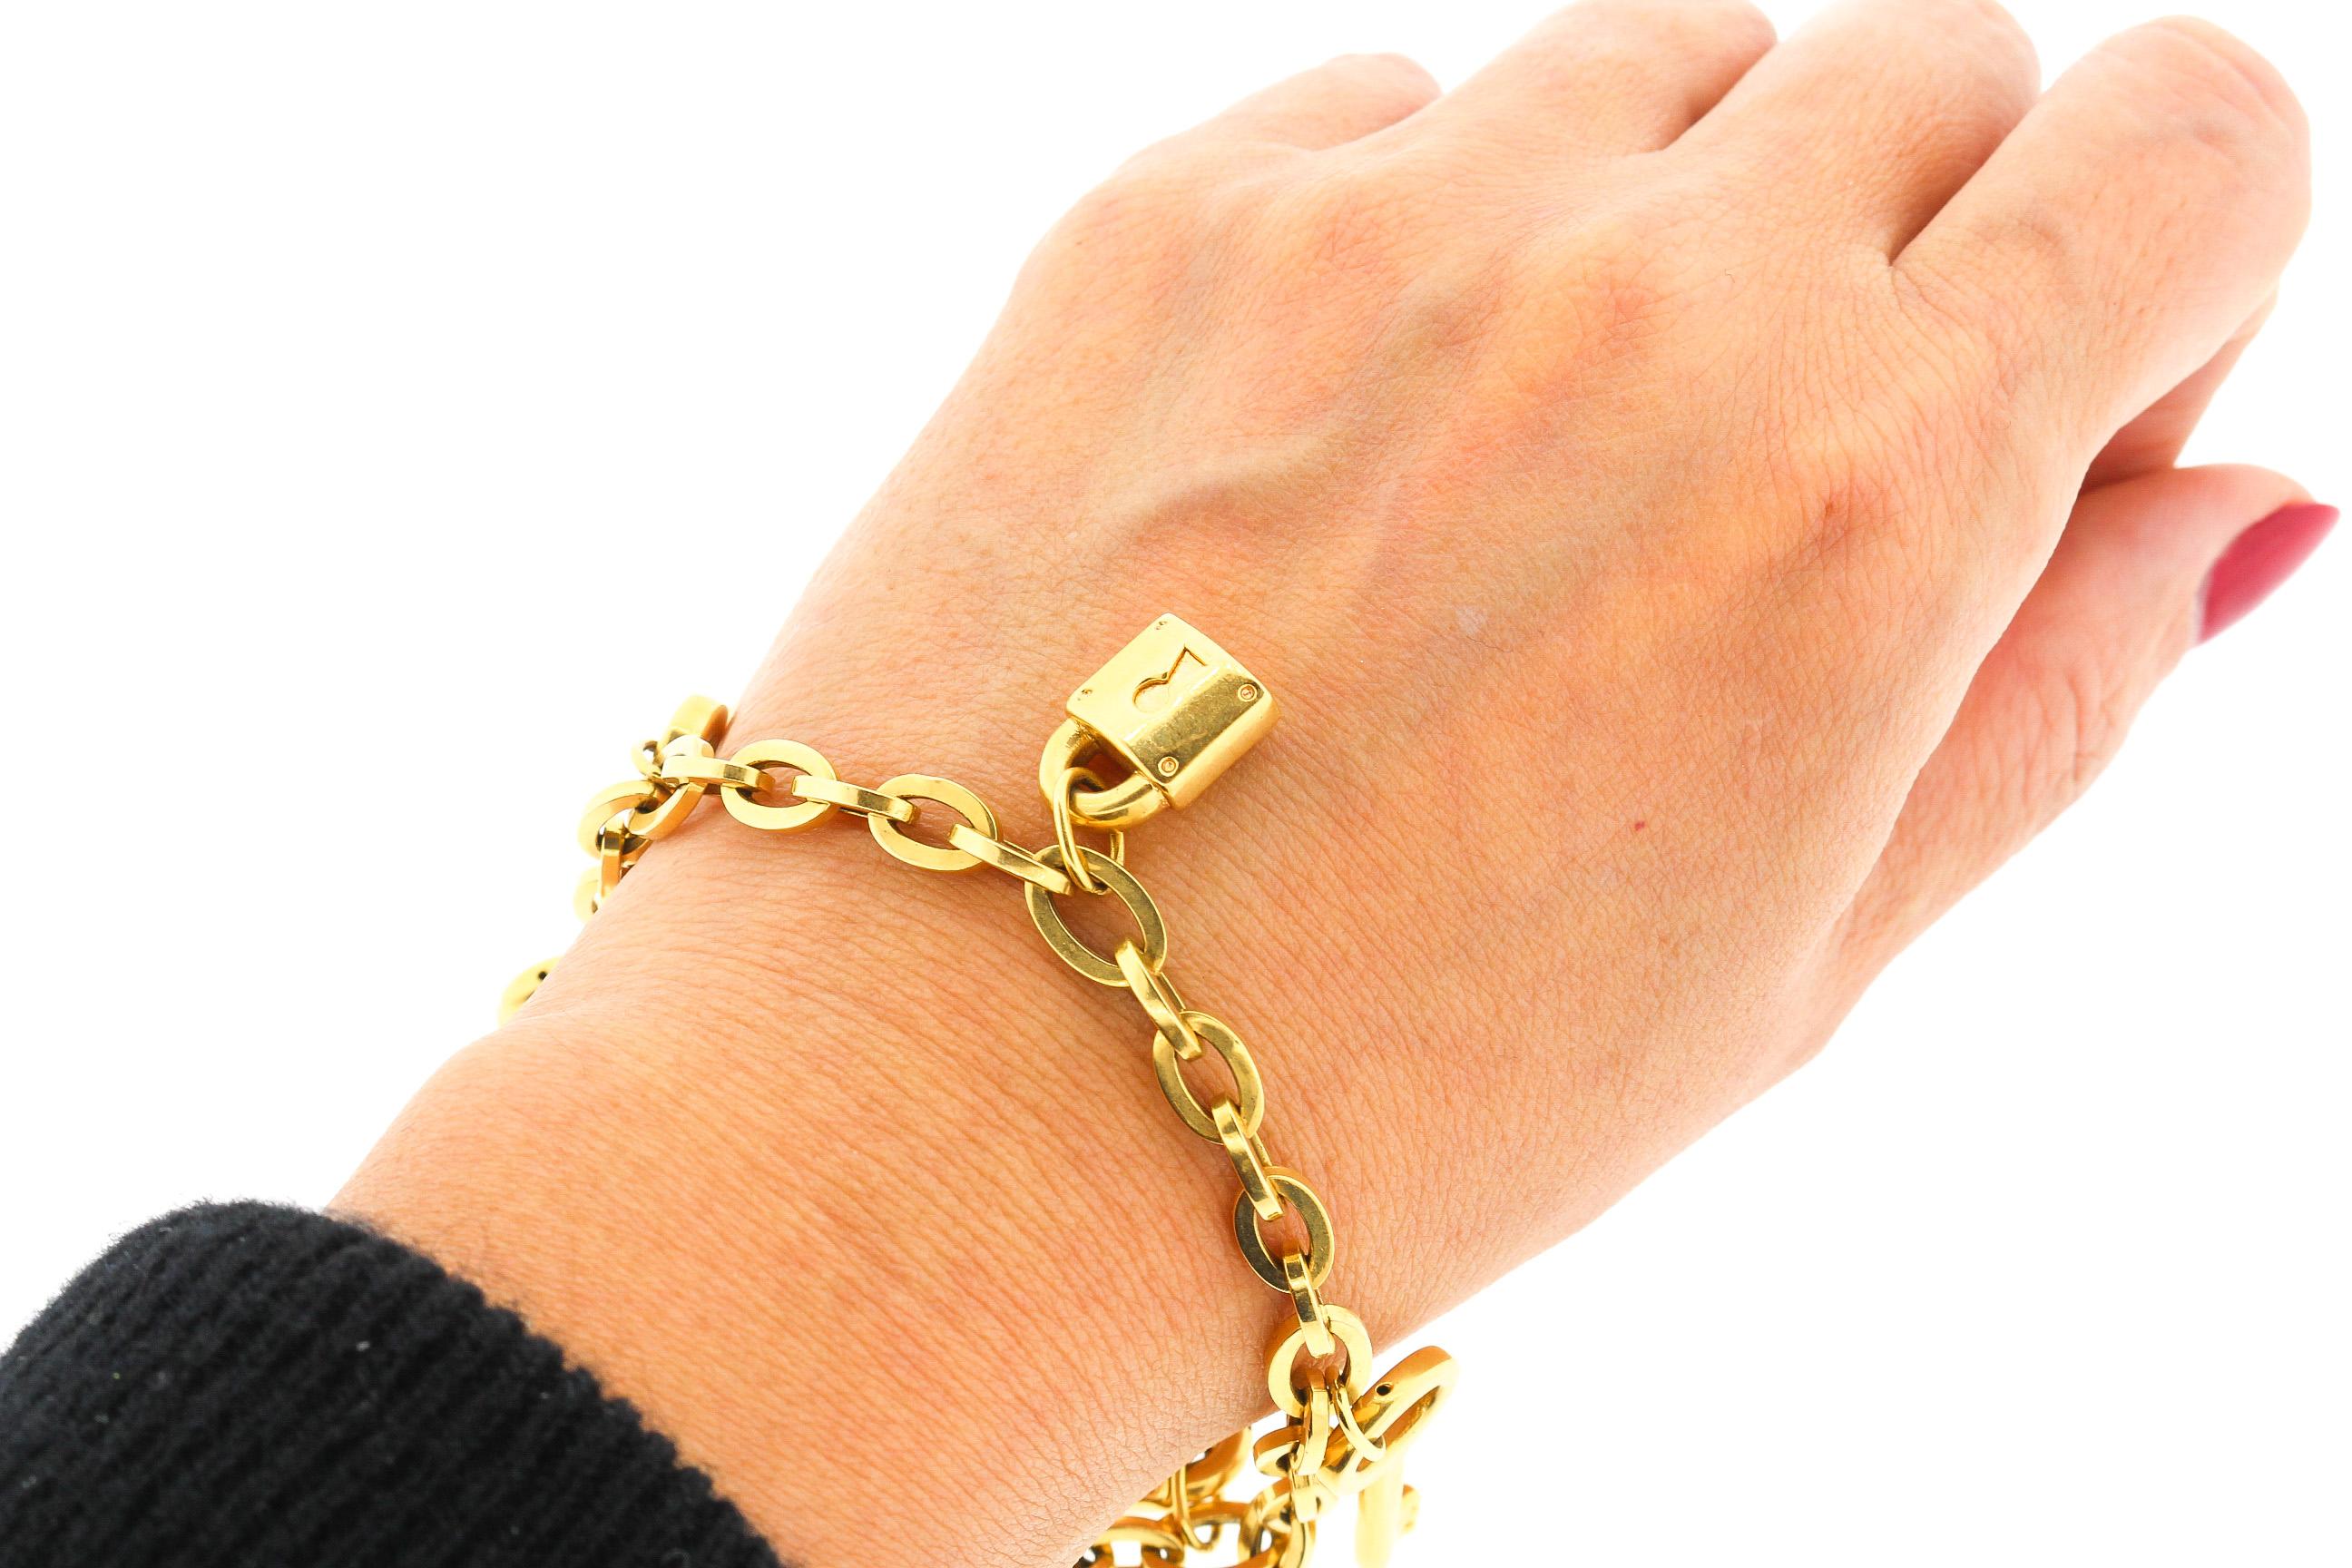 Eine tragbare Hohlform Gold 18k Gelbgold Link Charme Armband mit abwechselnd Schlüssel und Vorhängeschloss charms. Das Armband hat italienische Punzen und wurde wahrscheinlich in den 1990er Jahren hergestellt. Die ovale Gliederkette des Armbands ist